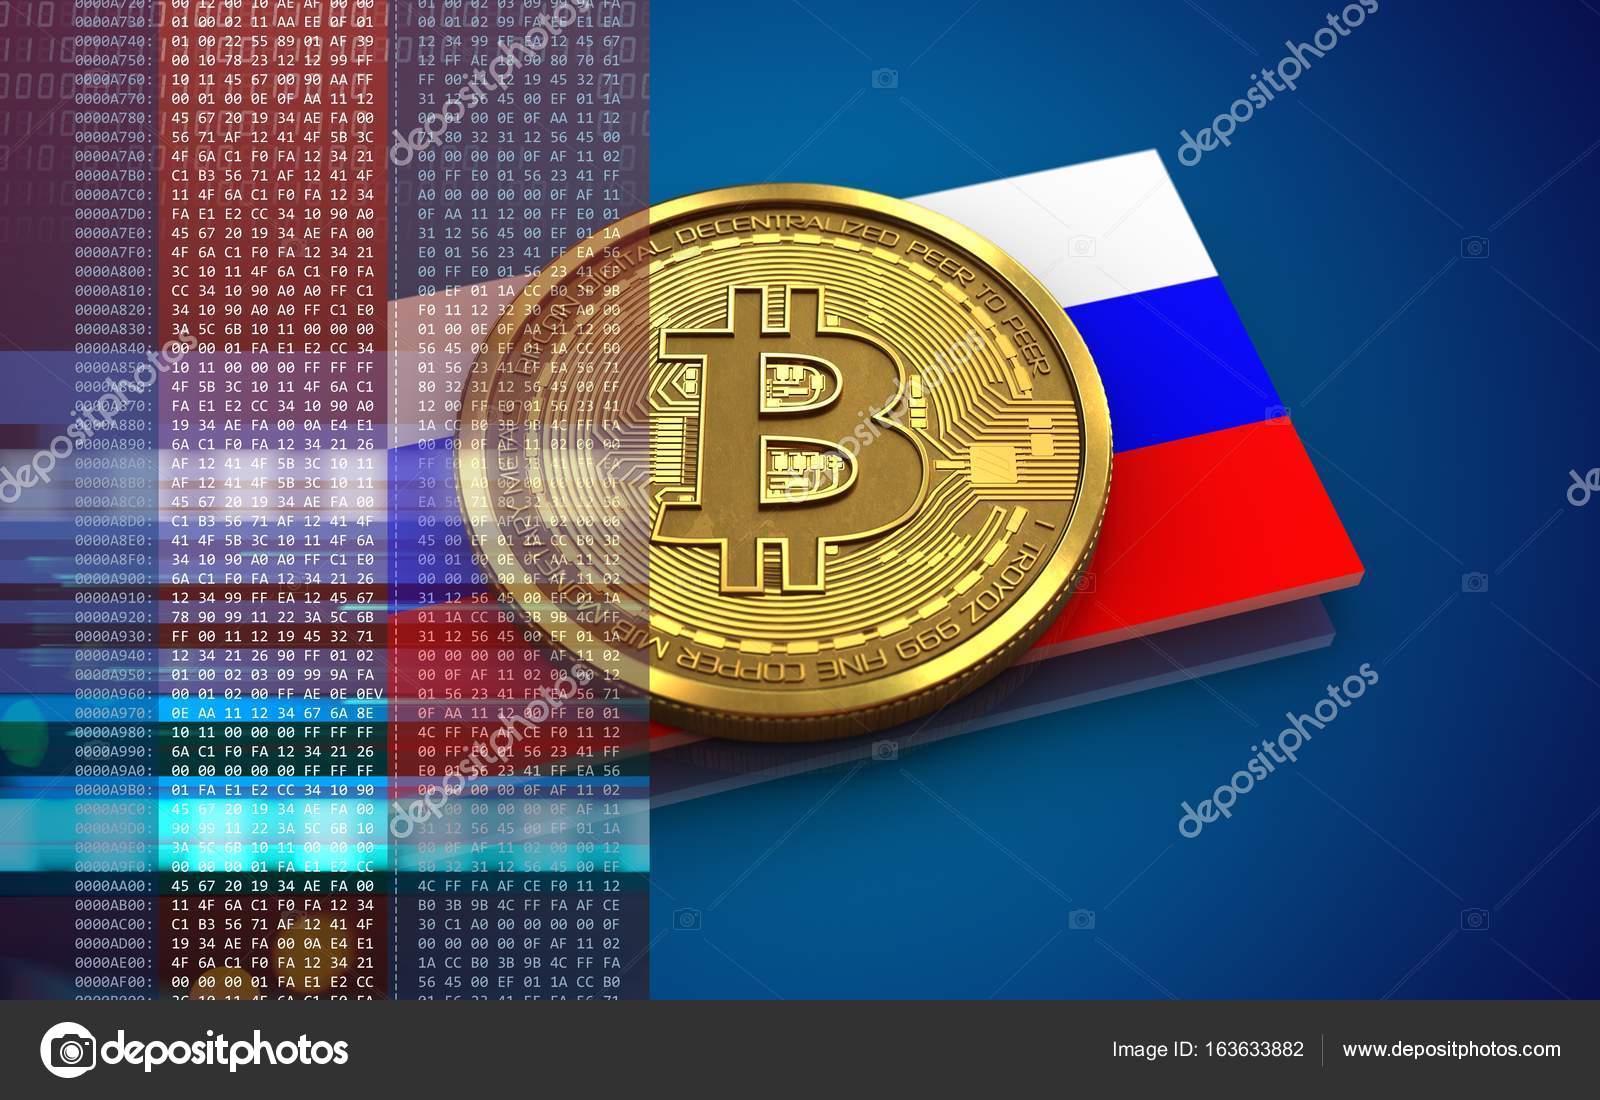 Криптовалюта в россии: Налоги с криптовалюты в России – ответы на распространенные вопросы